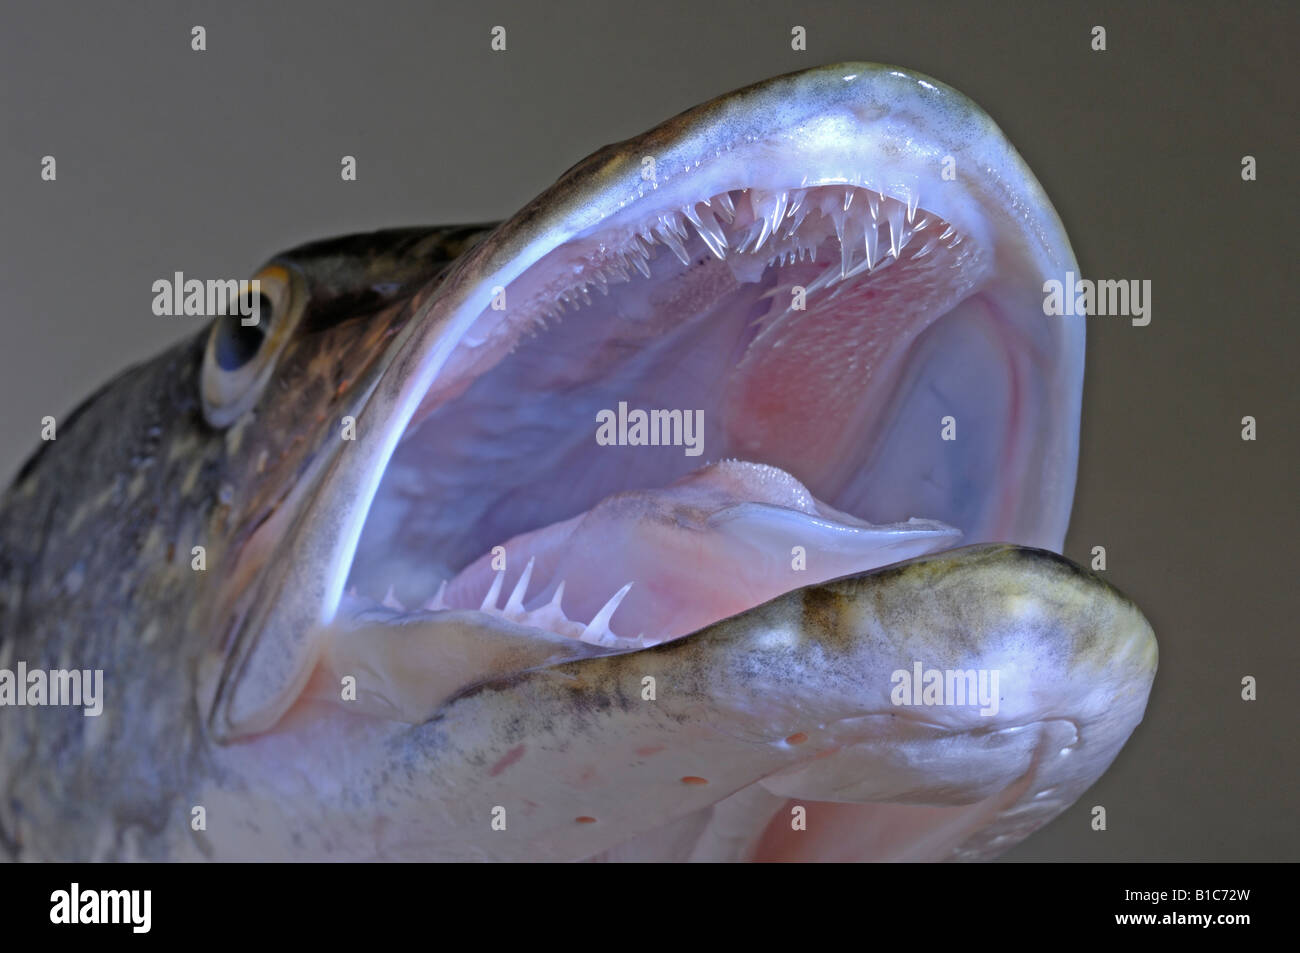 Denti di pesce immagini e fotografie stock ad alta risoluzione - Alamy